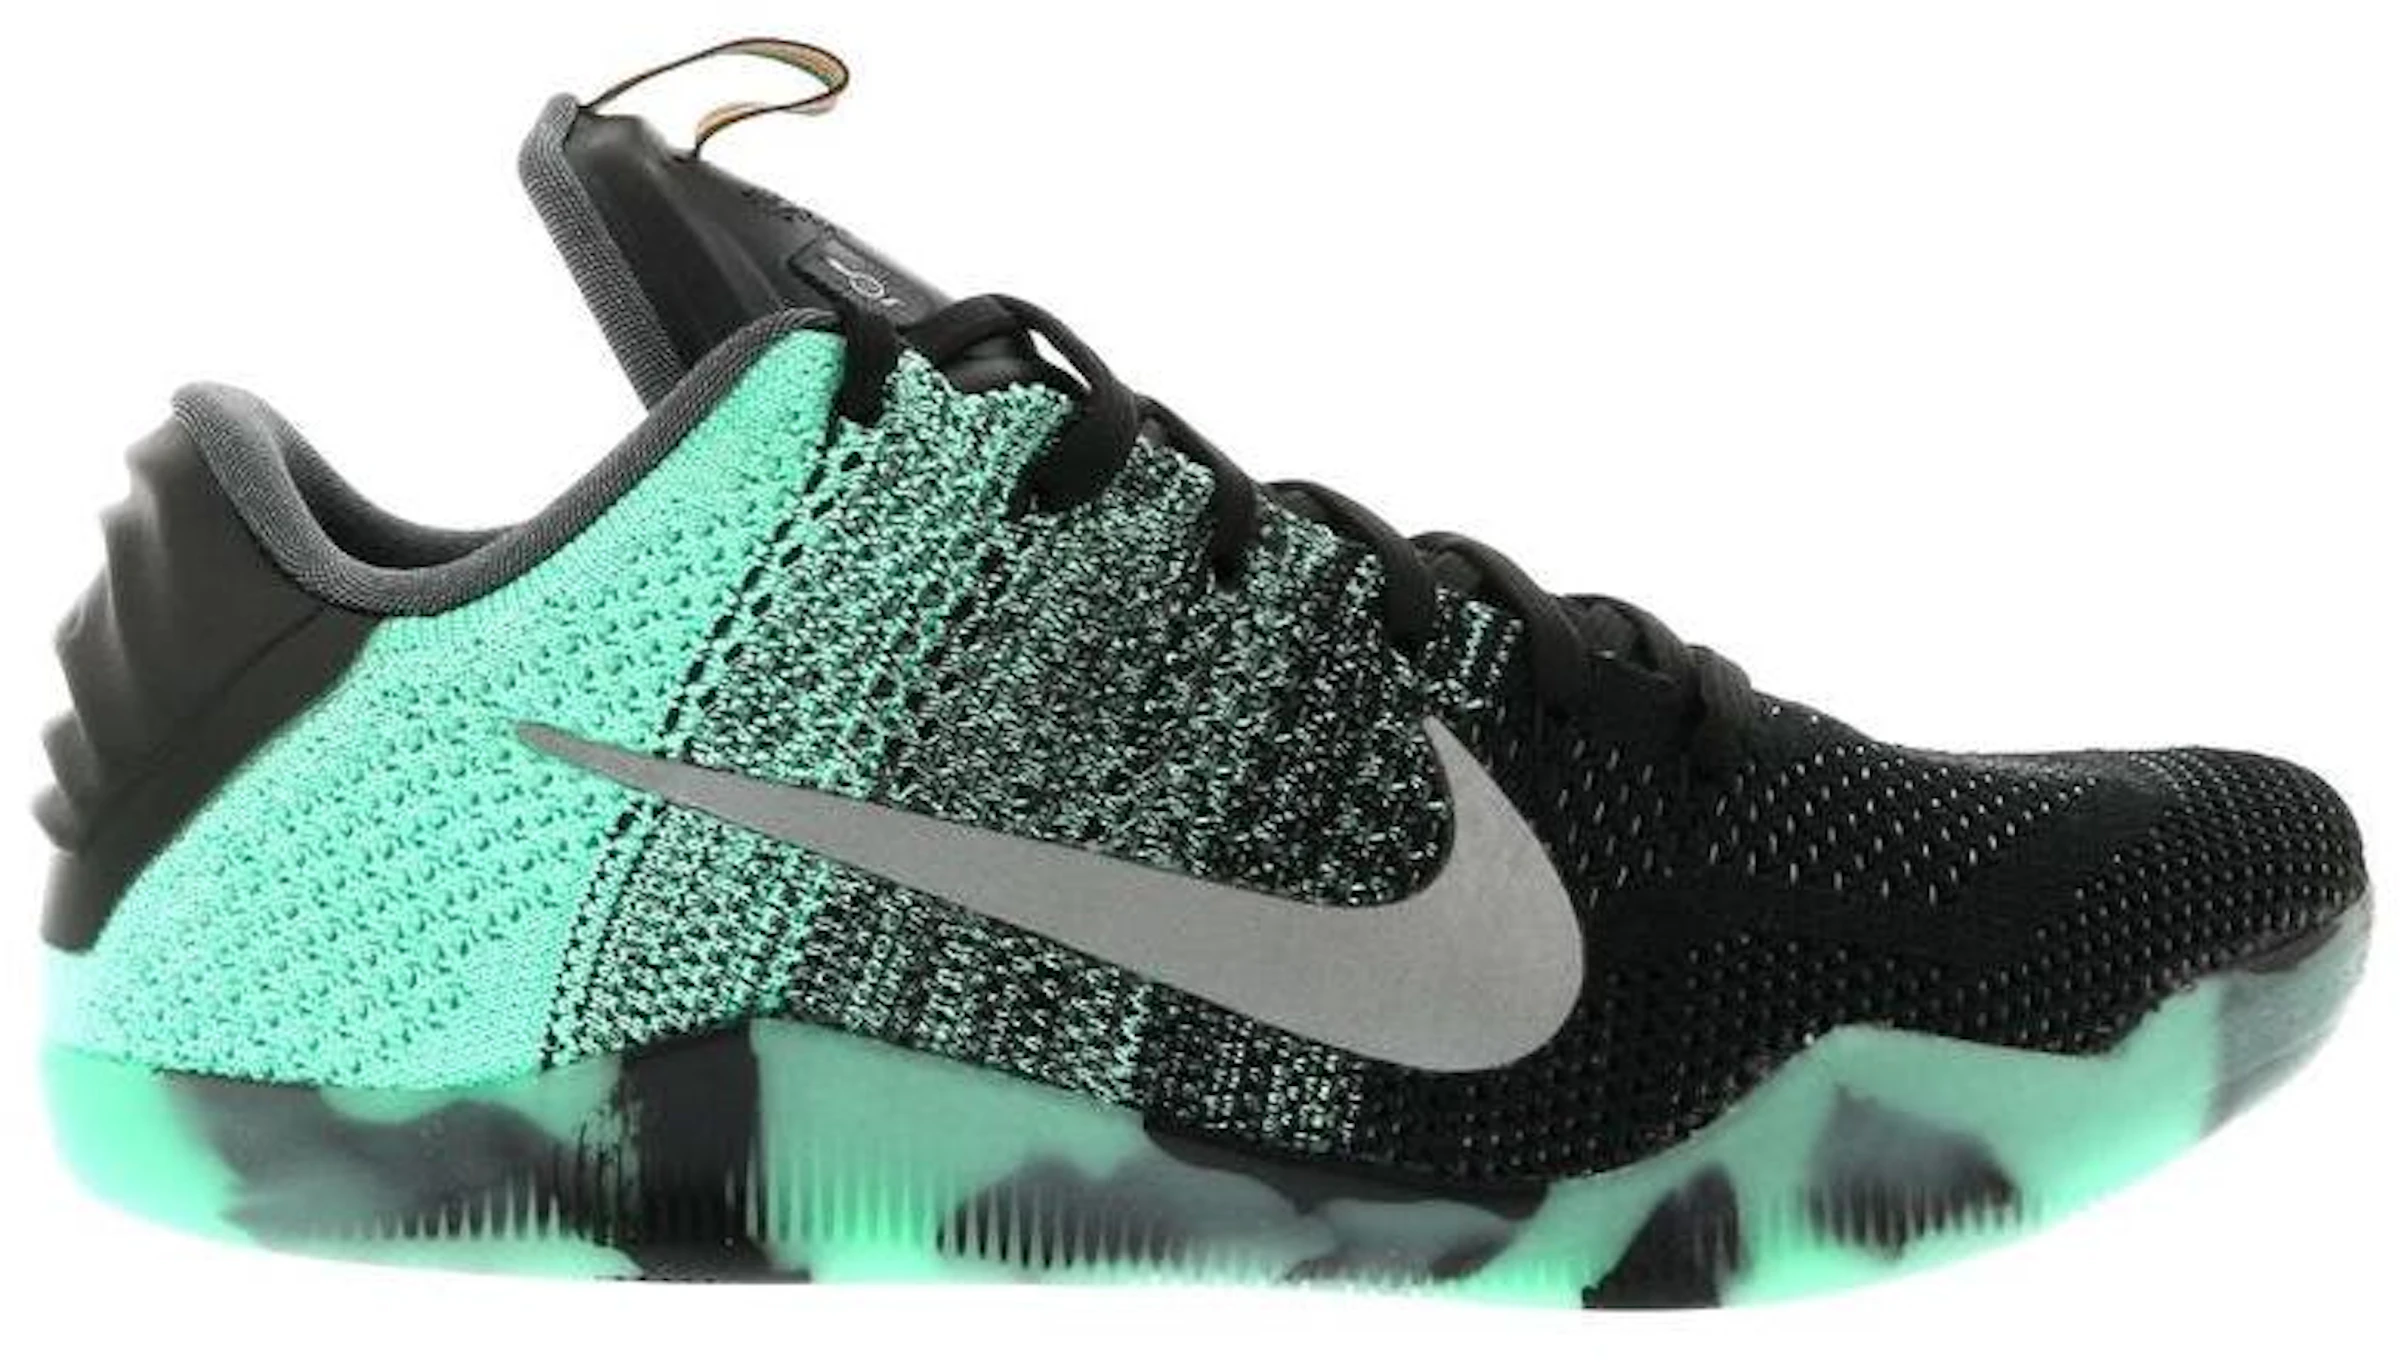 Nike Kobe 11 Calzado y sneakers nuevos - StockX